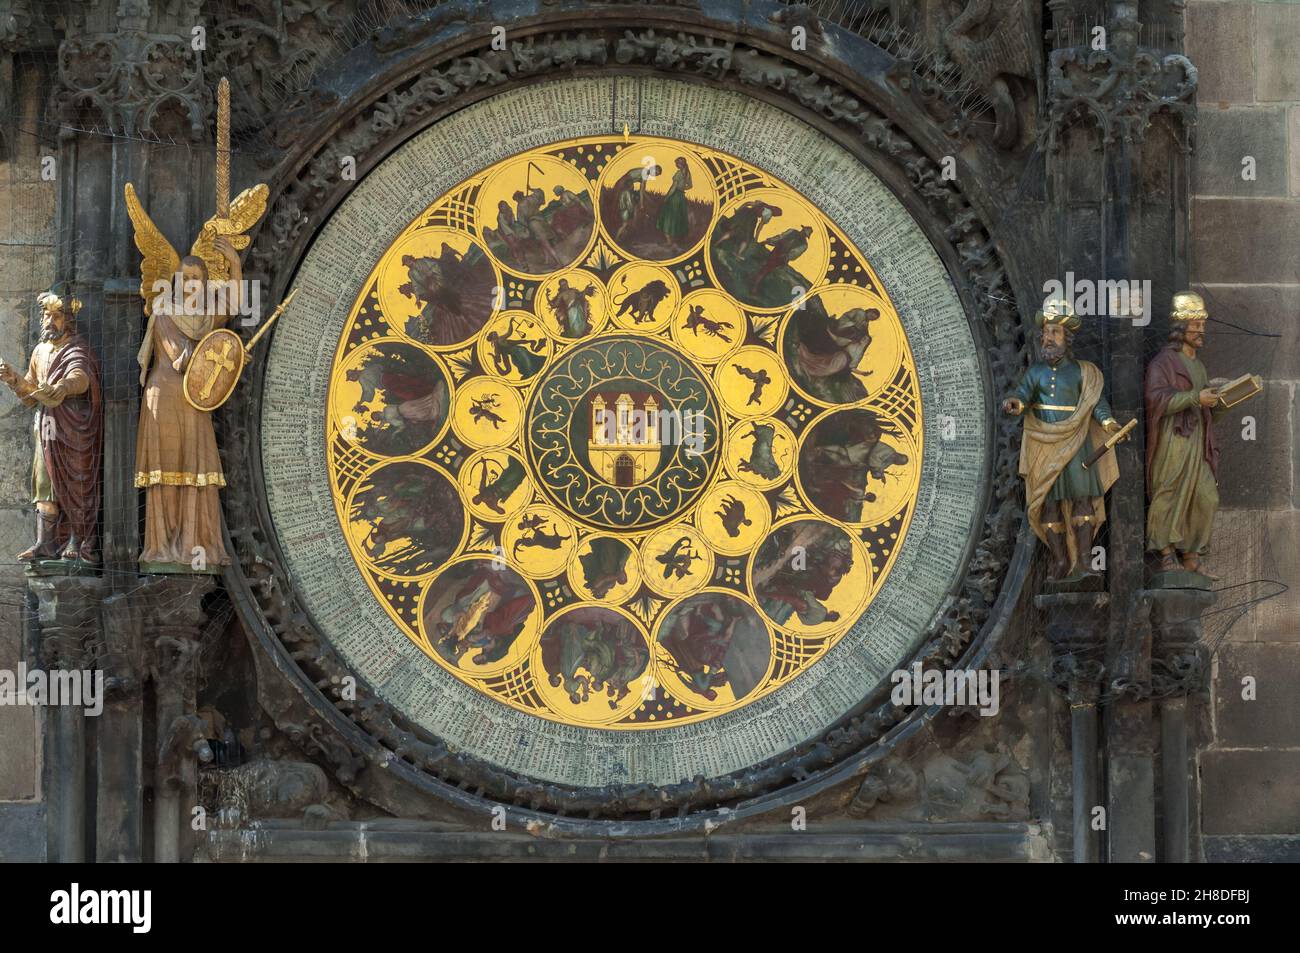 Der prunkvolle Kalender der Prager Astronomischen Uhr wird von den Figuren eines Philosophen, des Erzengels Michael, des Astronomen und eines Chronisten flankiert Stockfoto